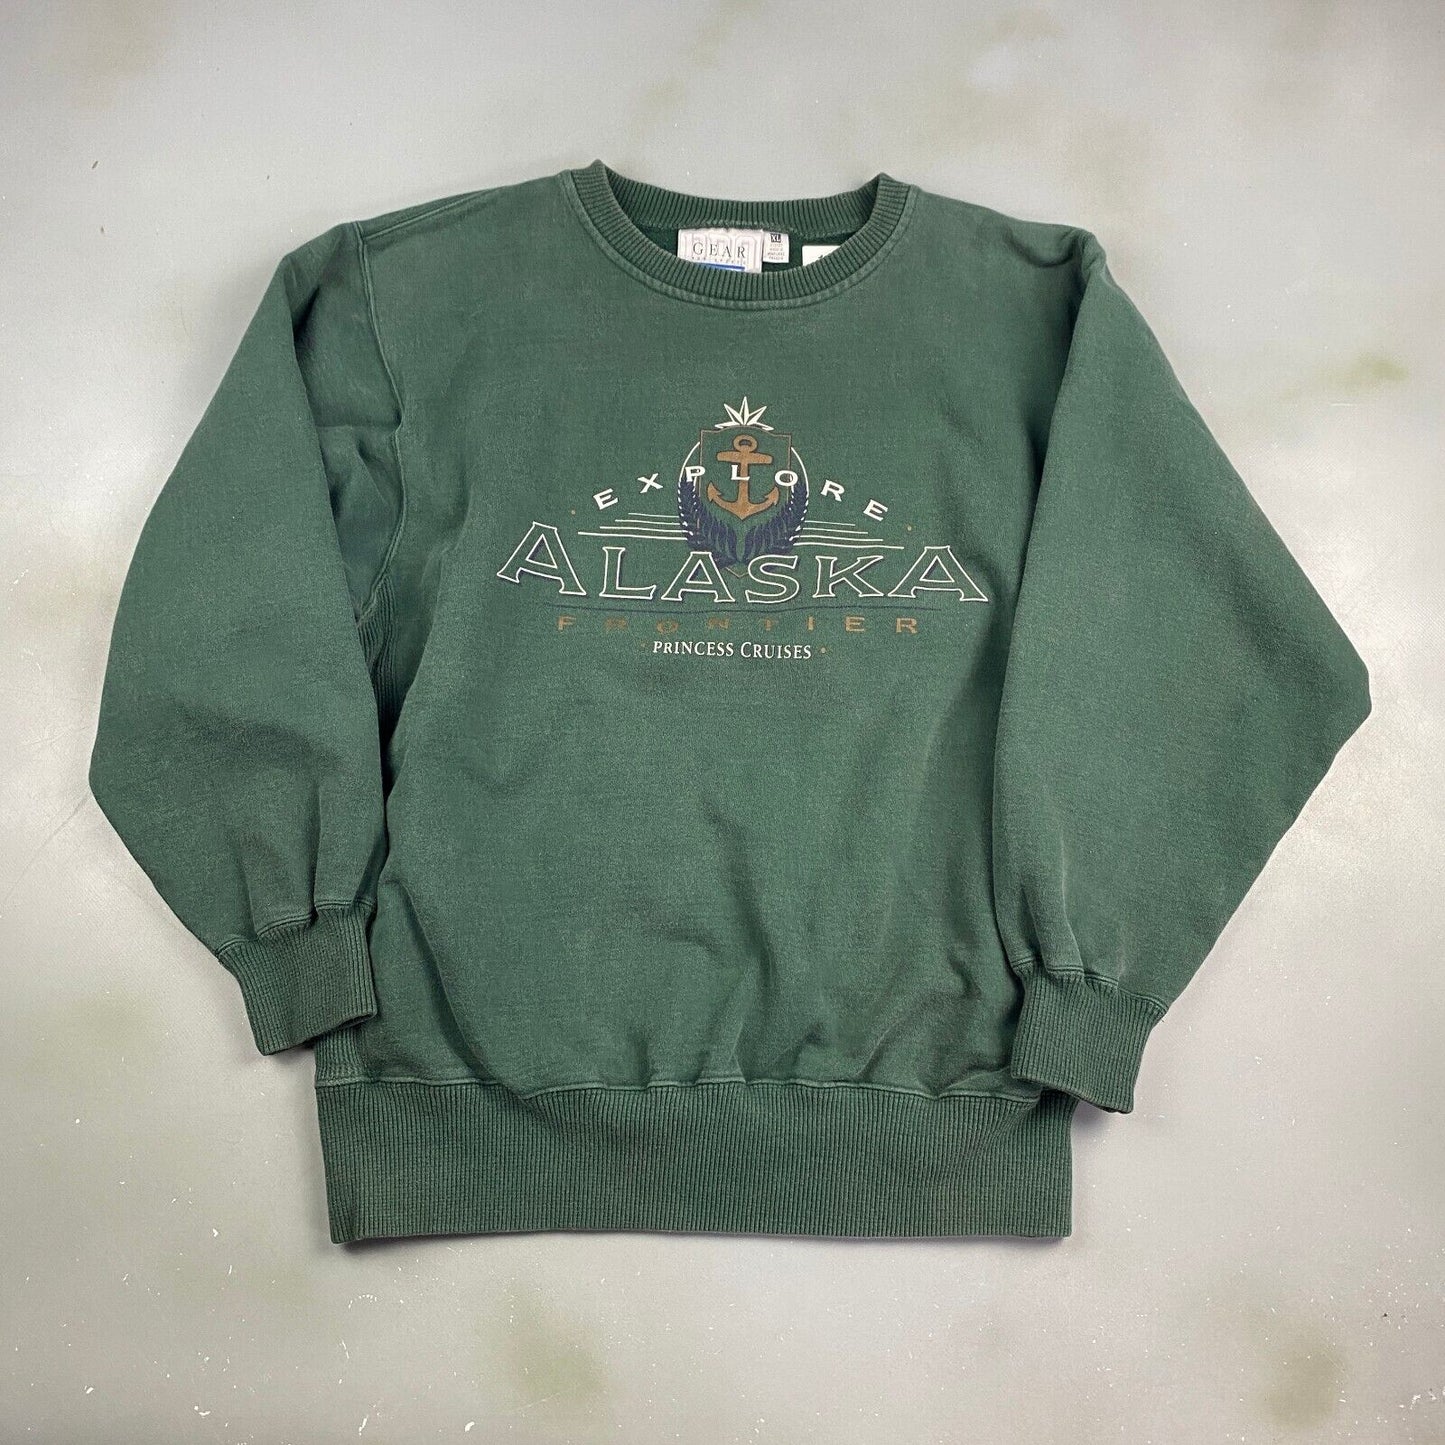 VINTAGE 90s Explore Alaska Heavyweight Green Crewneck Sweater sz XL Men Adult